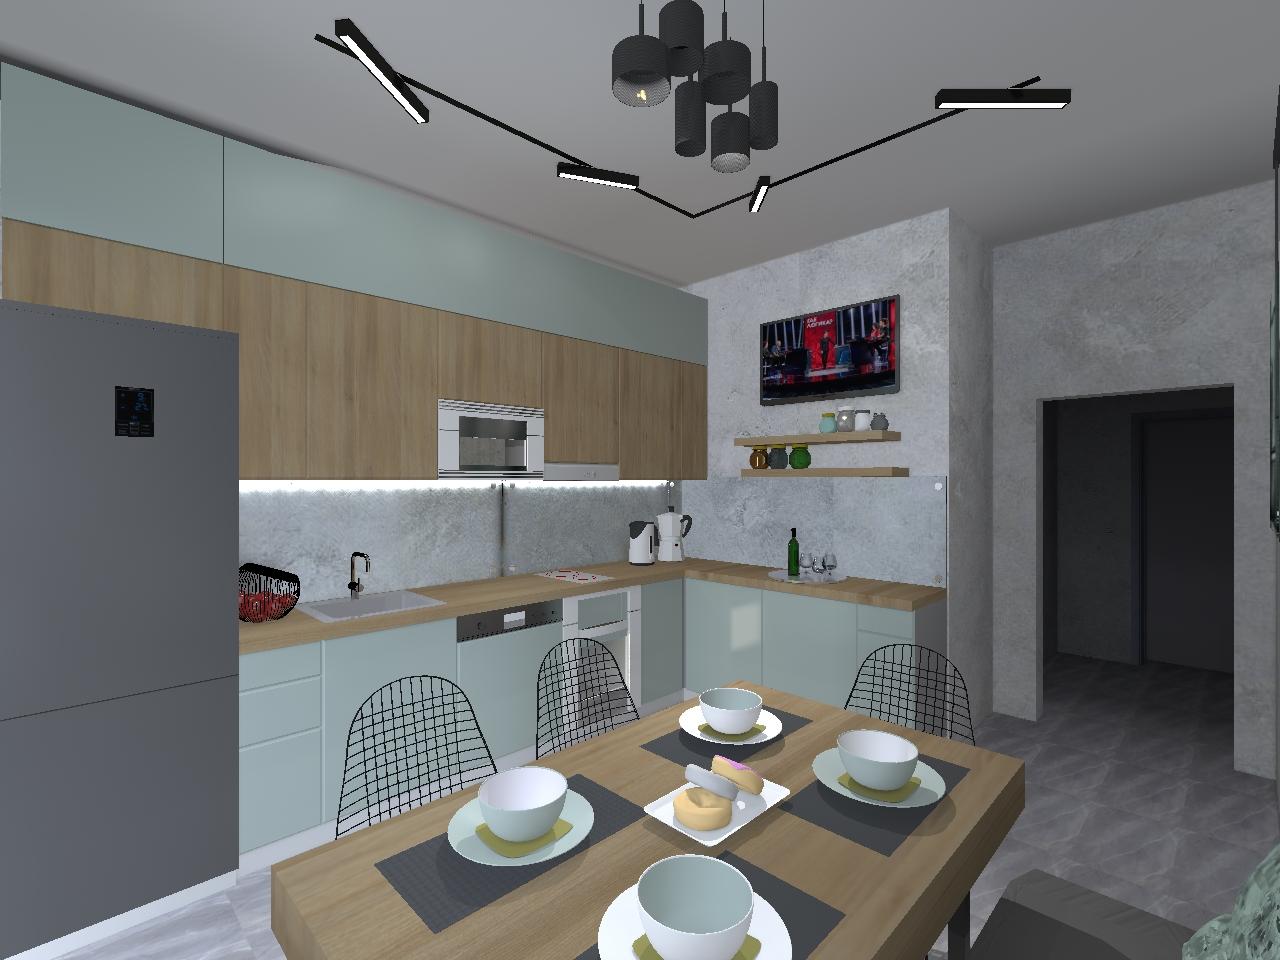 Интерьер кухни cветовыми линиями, подсветкой настенной и подсветкой светодиодной